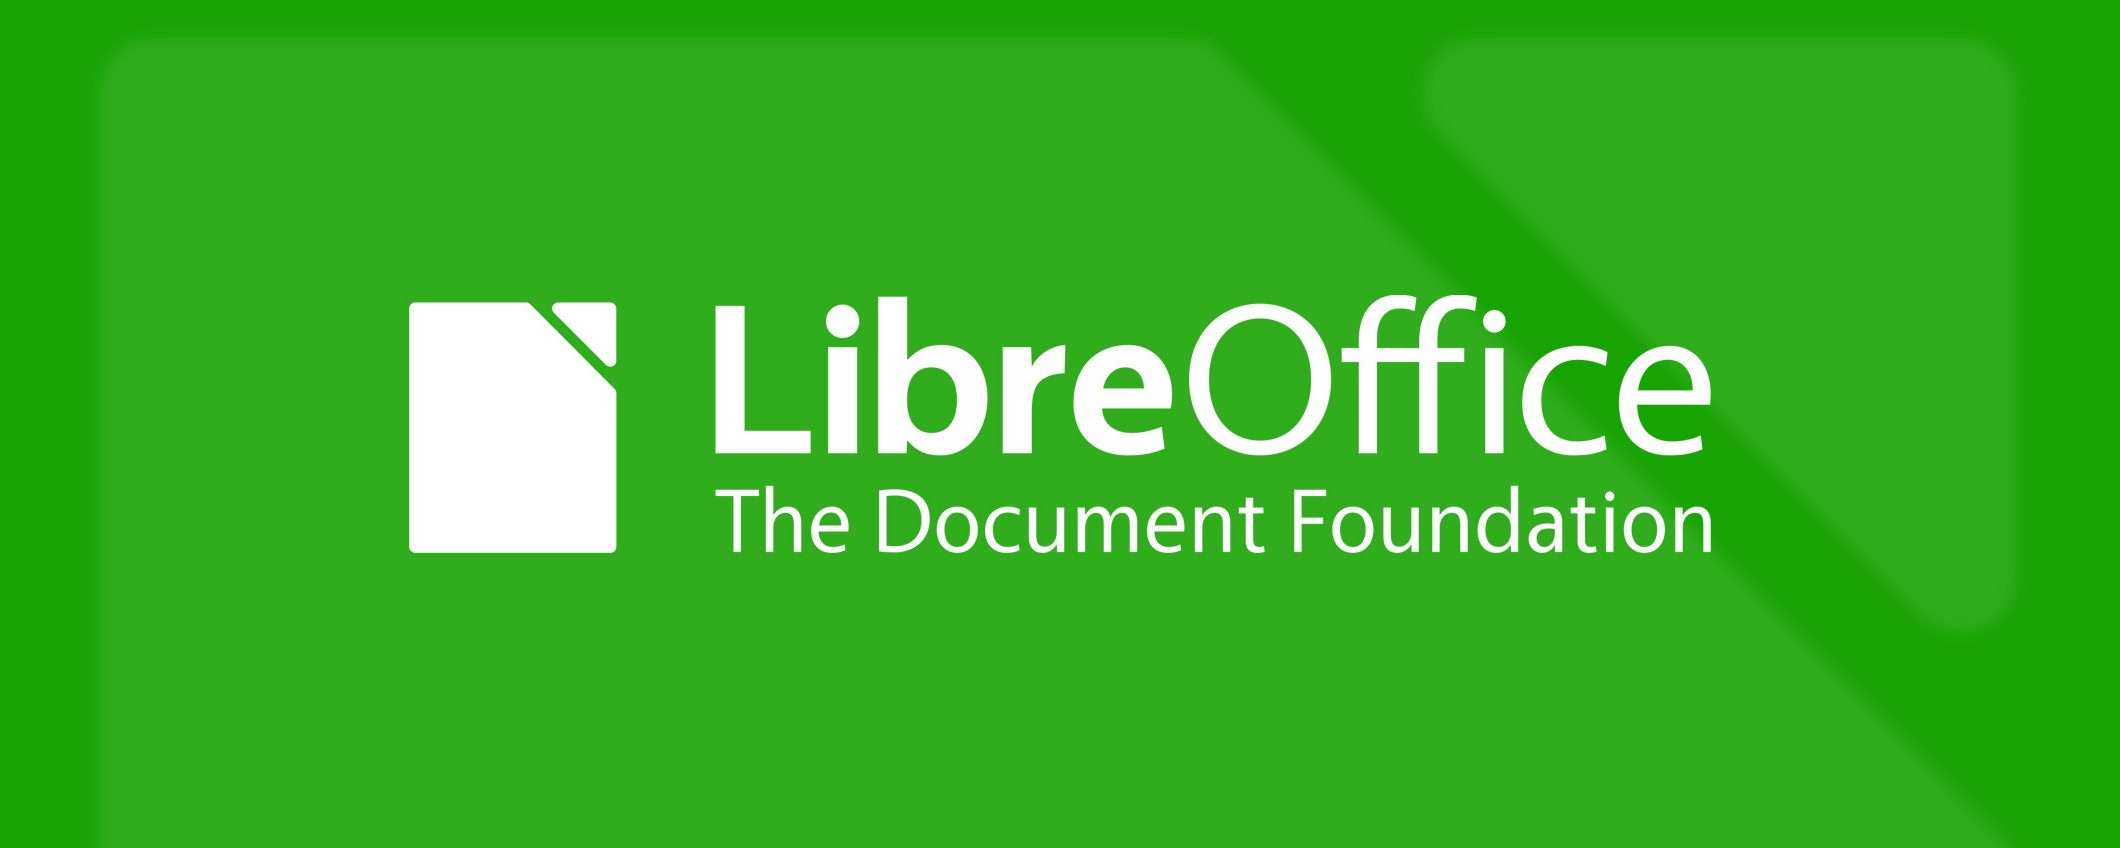 LibreOffice 7.4 è disponibile: download e novità